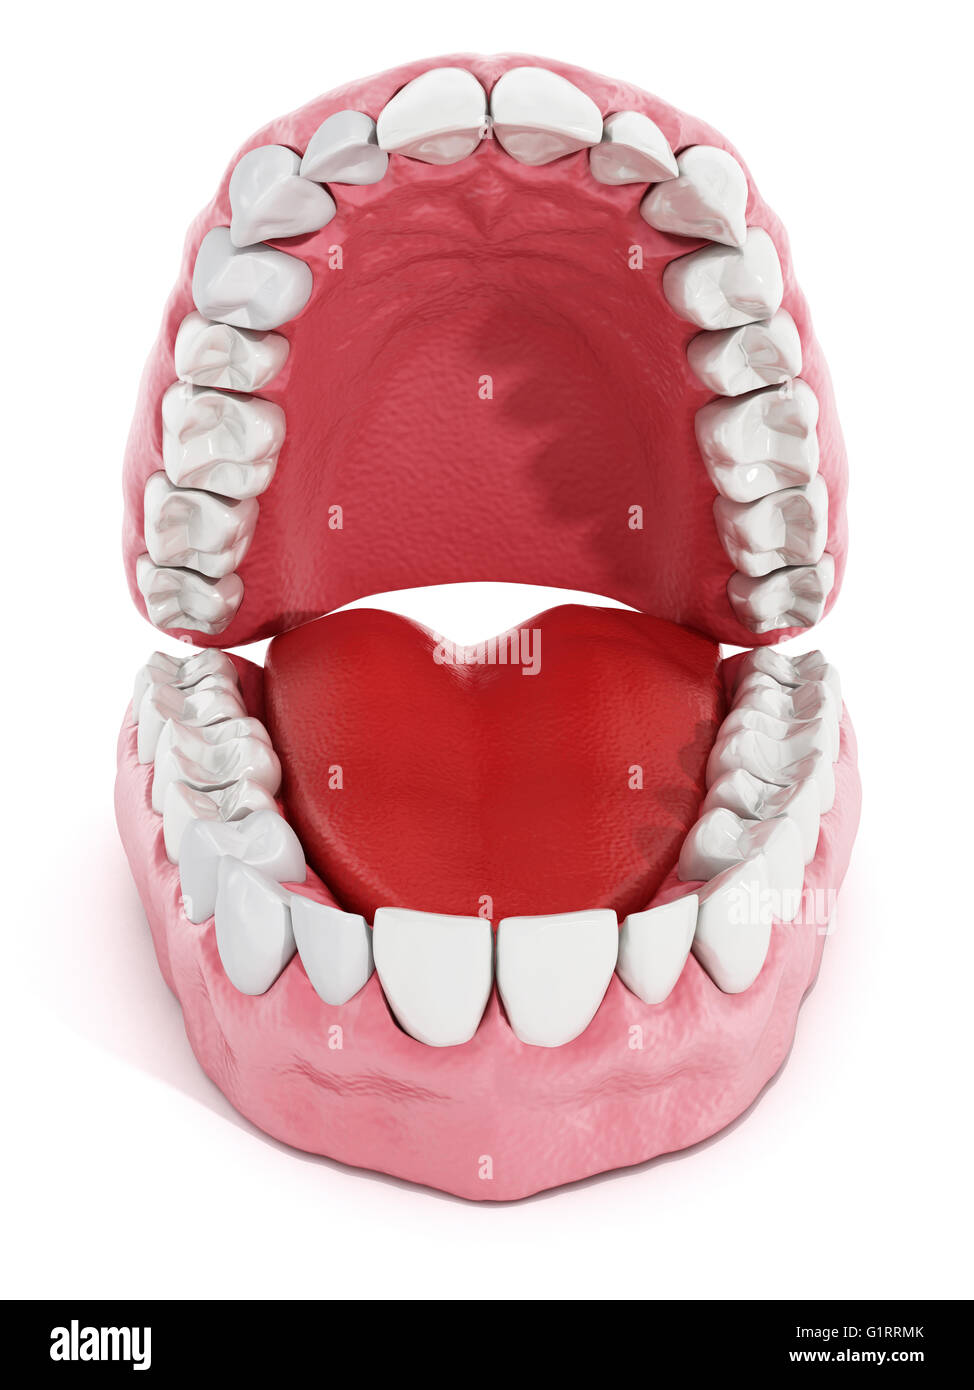 Les dents artificielles et modèle de poumon isolé sur fond blanc. 3D illustration. Banque D'Images